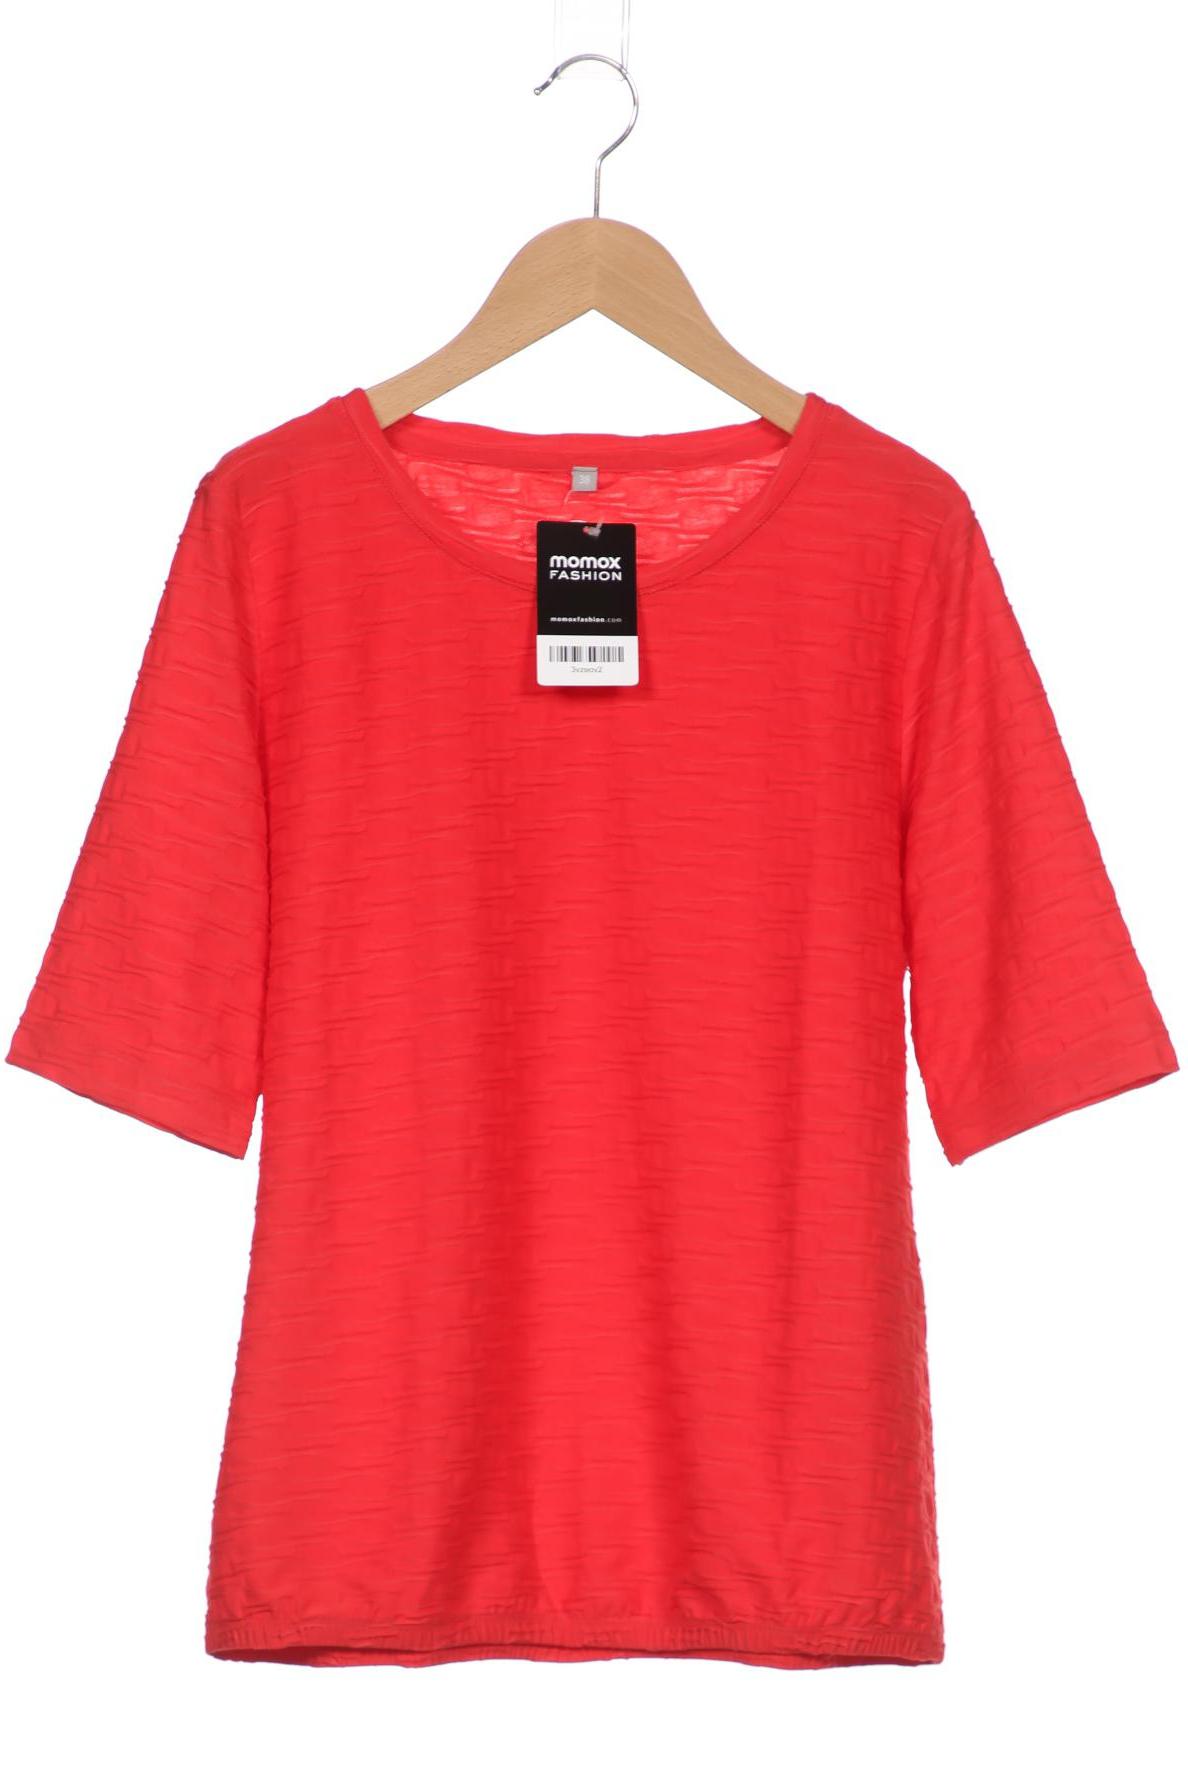 RABE Damen T-Shirt, rot von RABE